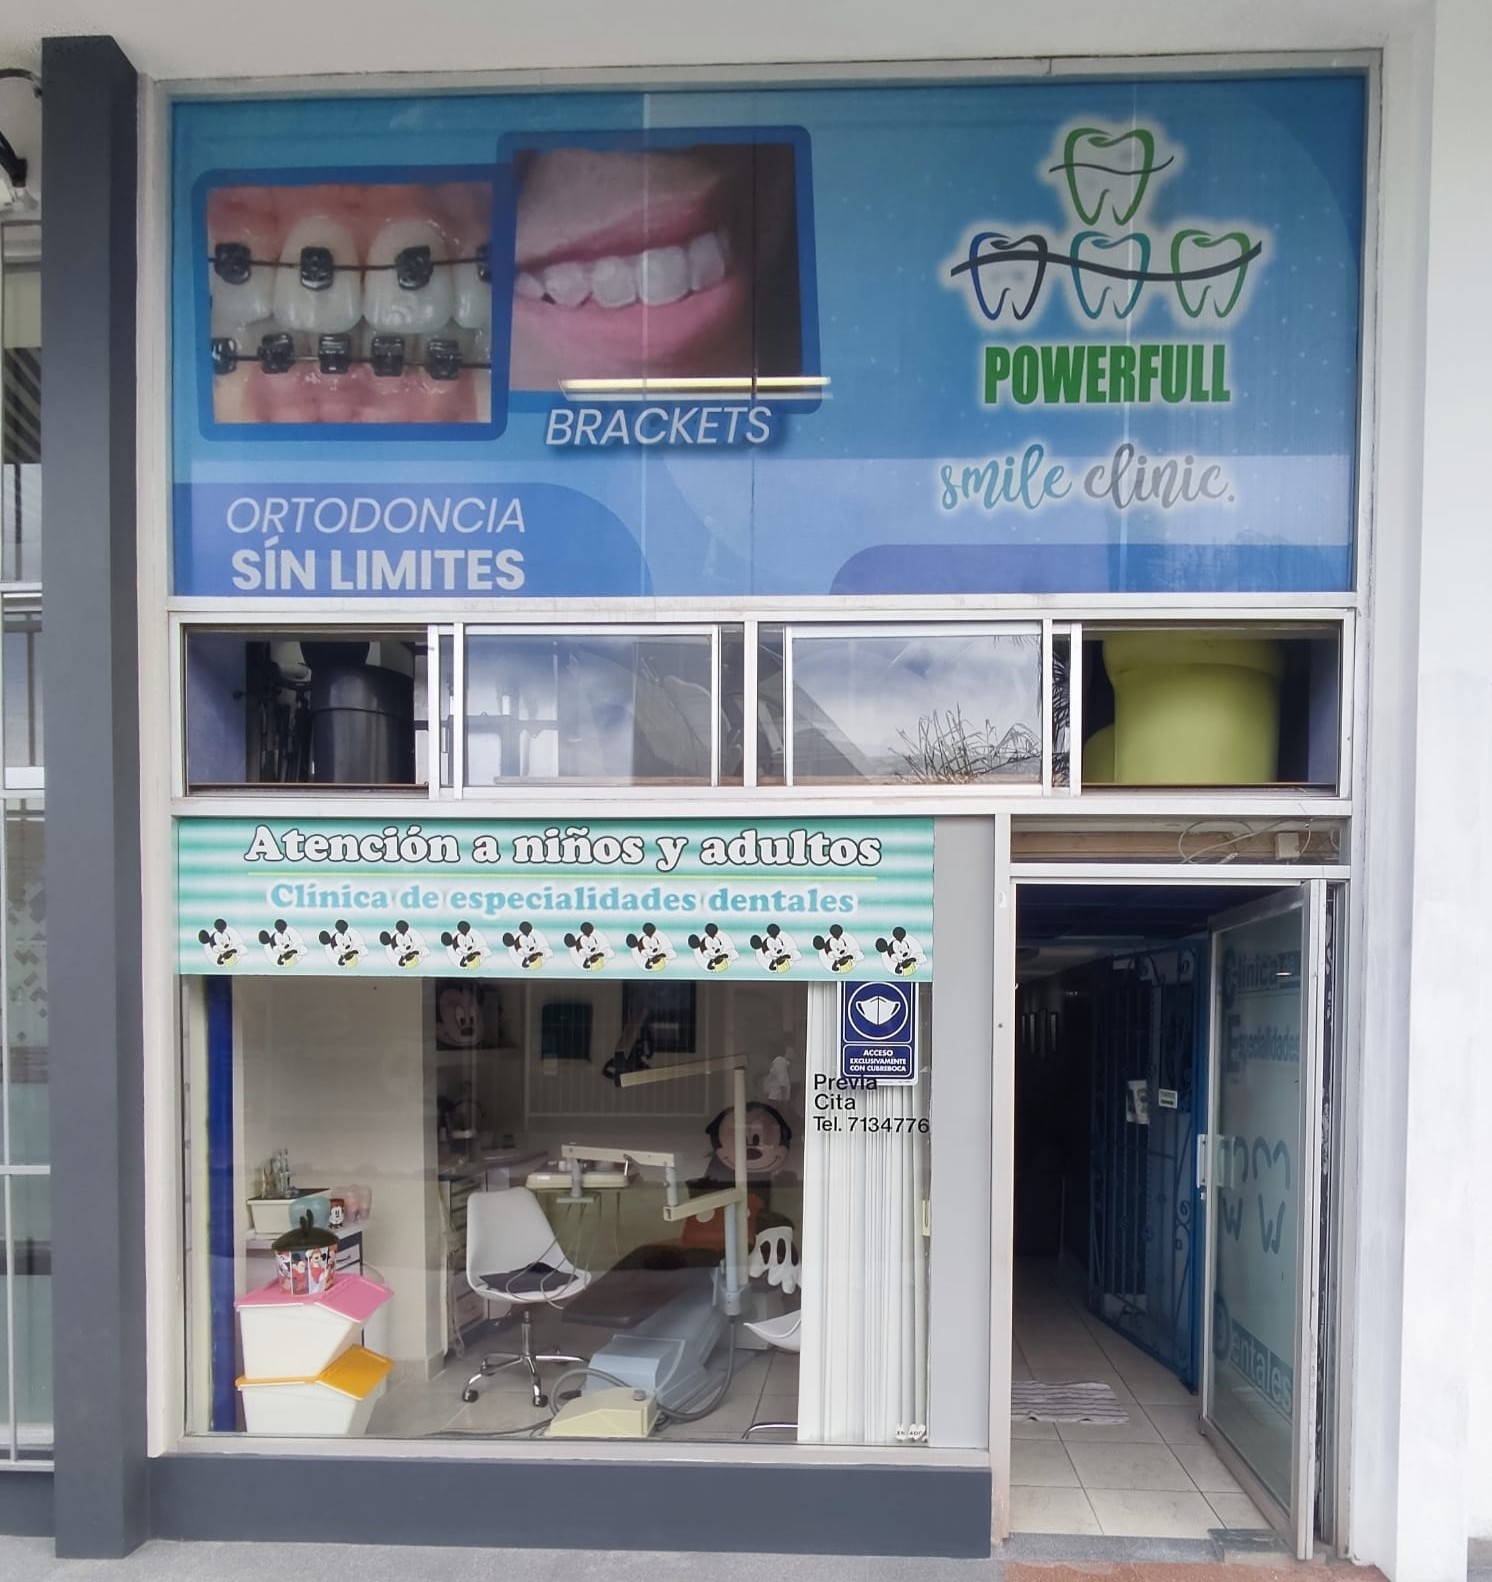 entrada a local comercial dentista